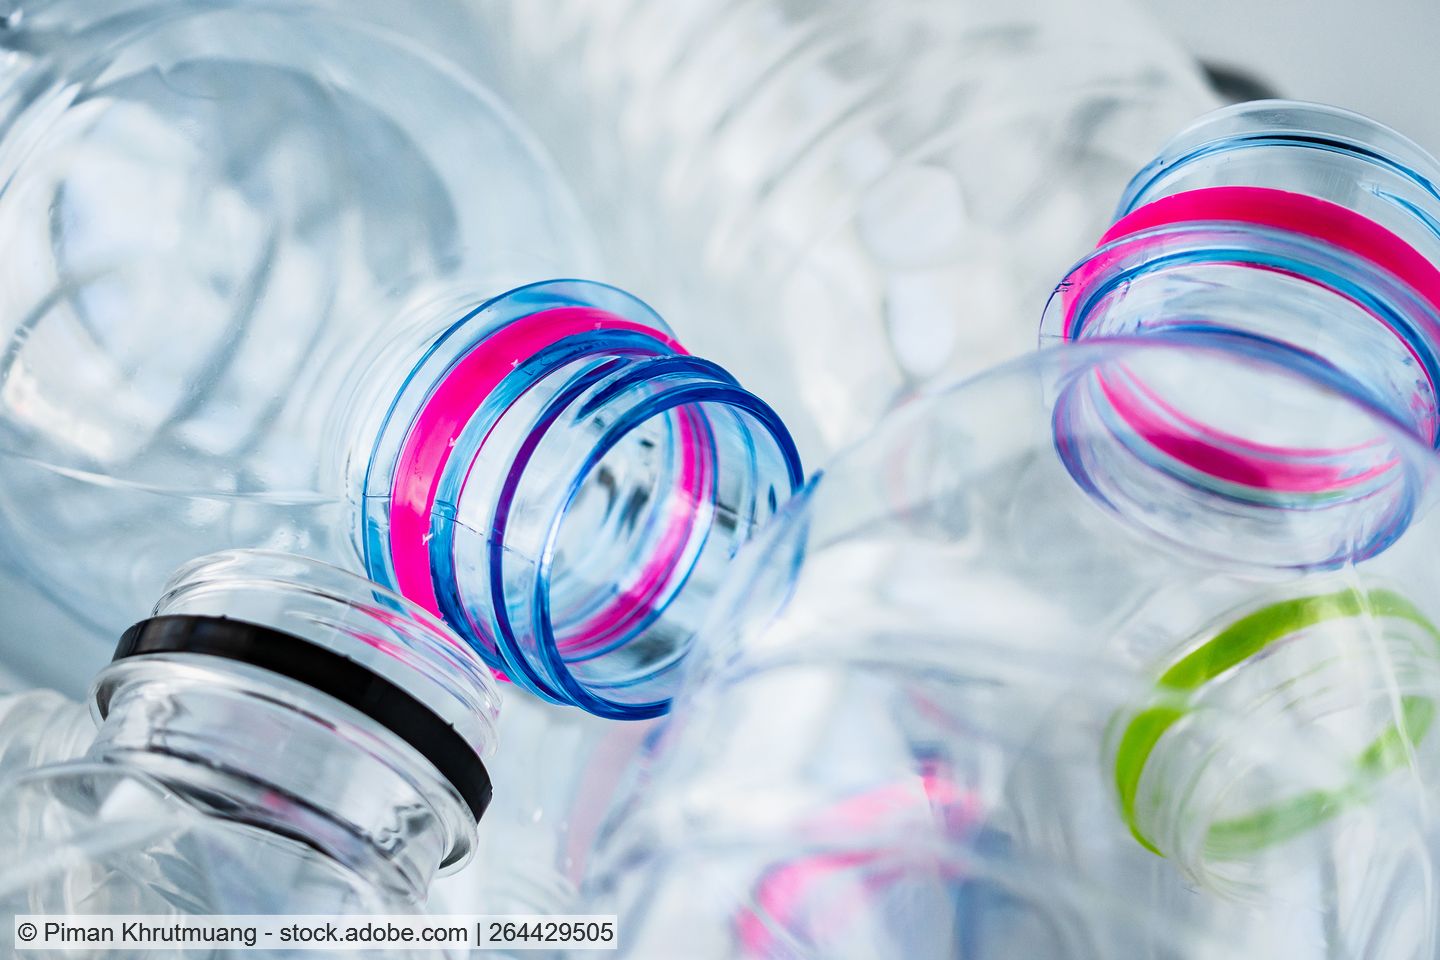 Mehrere klare PET-Flaschen mit Verschlussringen in unterschiedlichen Farben